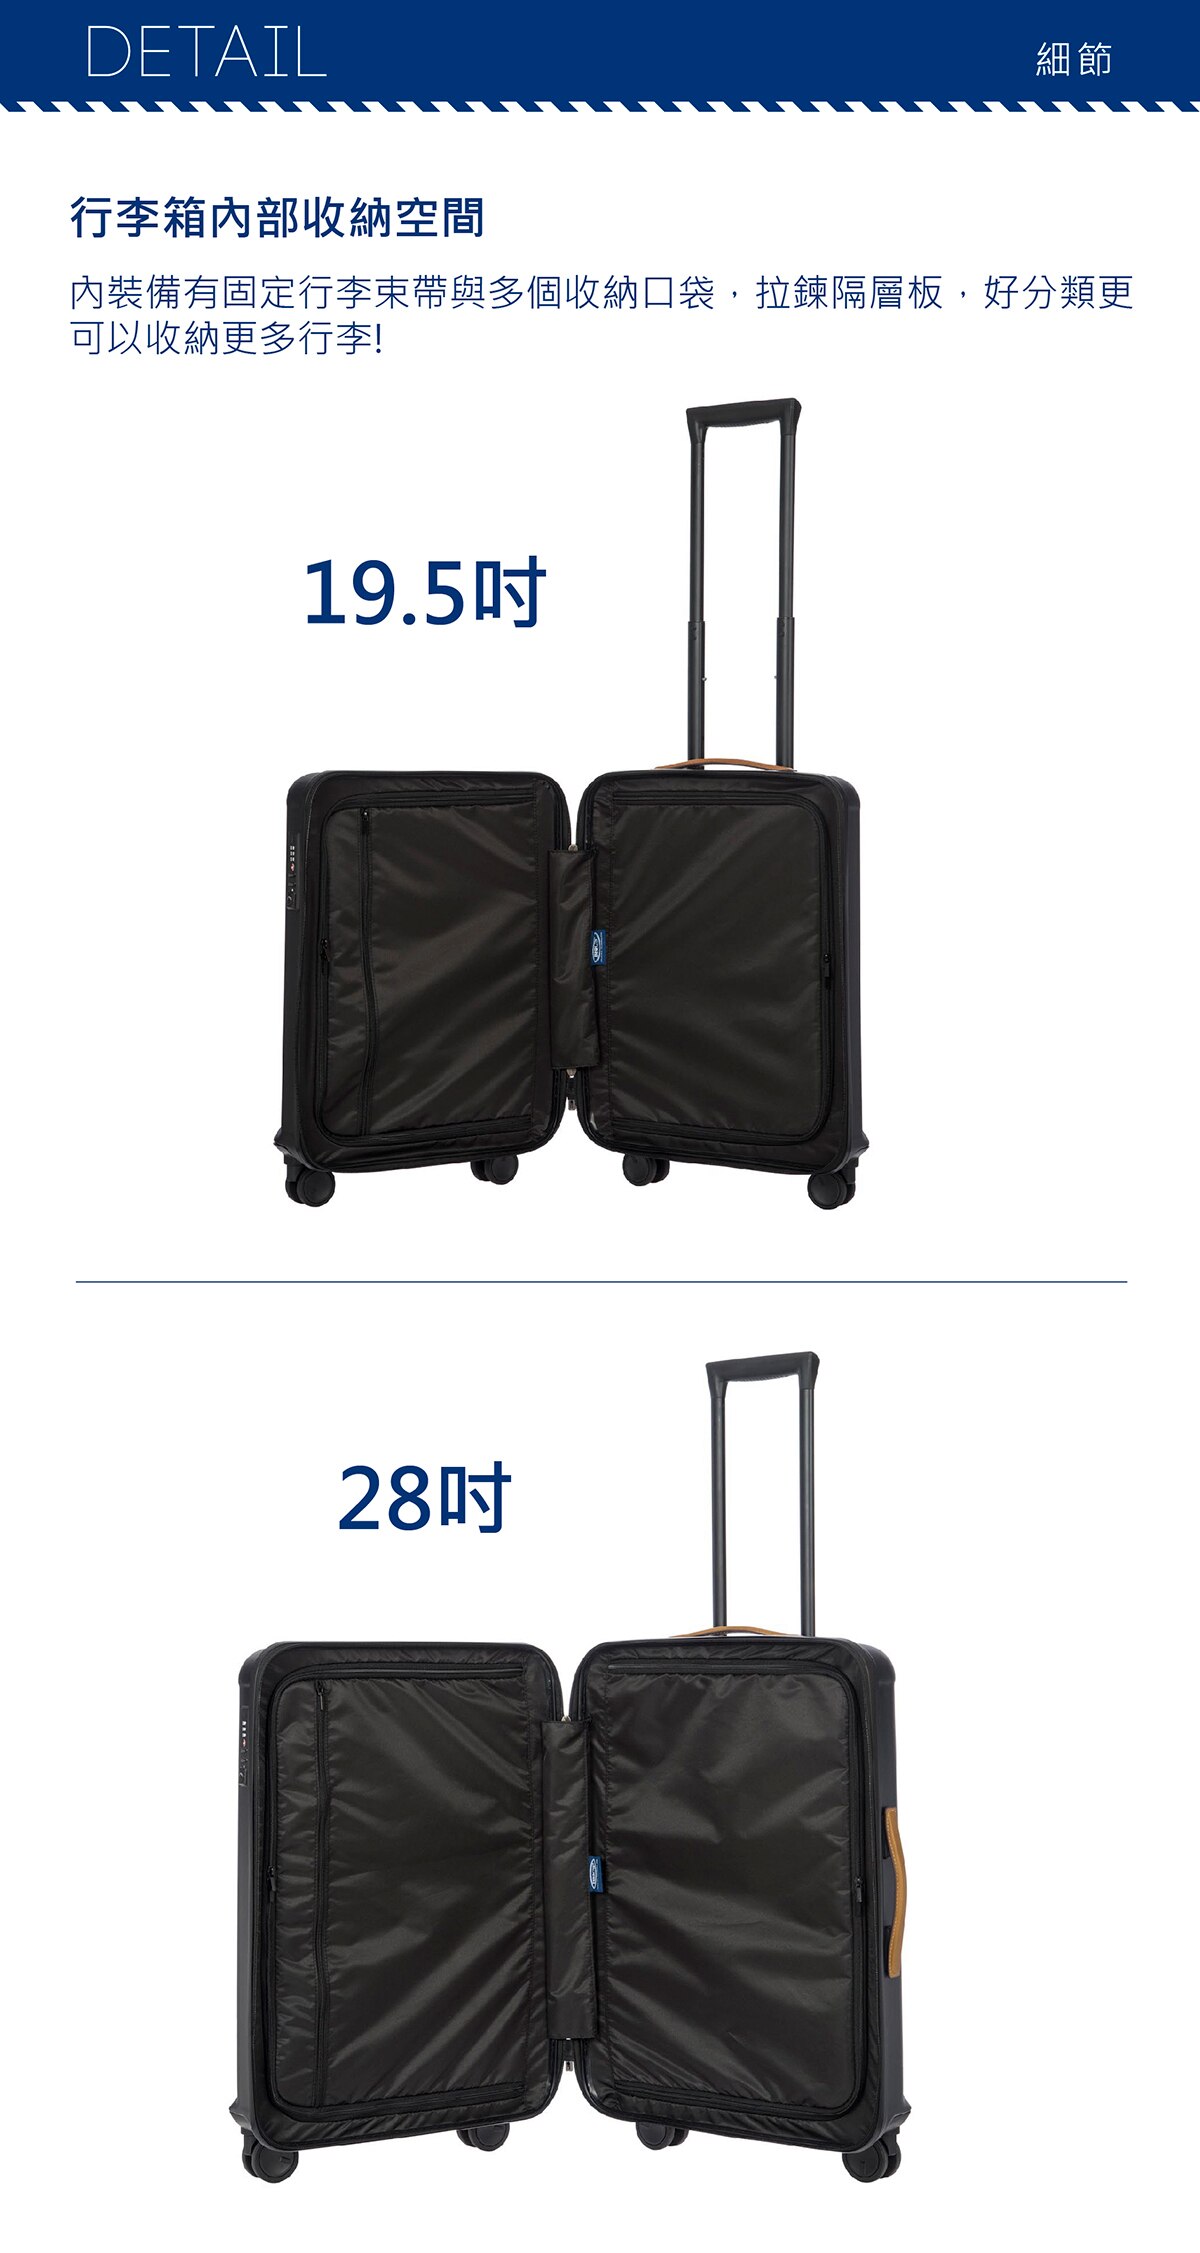 BRIC'S 21吋黑色行李箱,360度高品質輪具,採用高品質360度旋轉輪具,拖行起來更加輕鬆穩定.